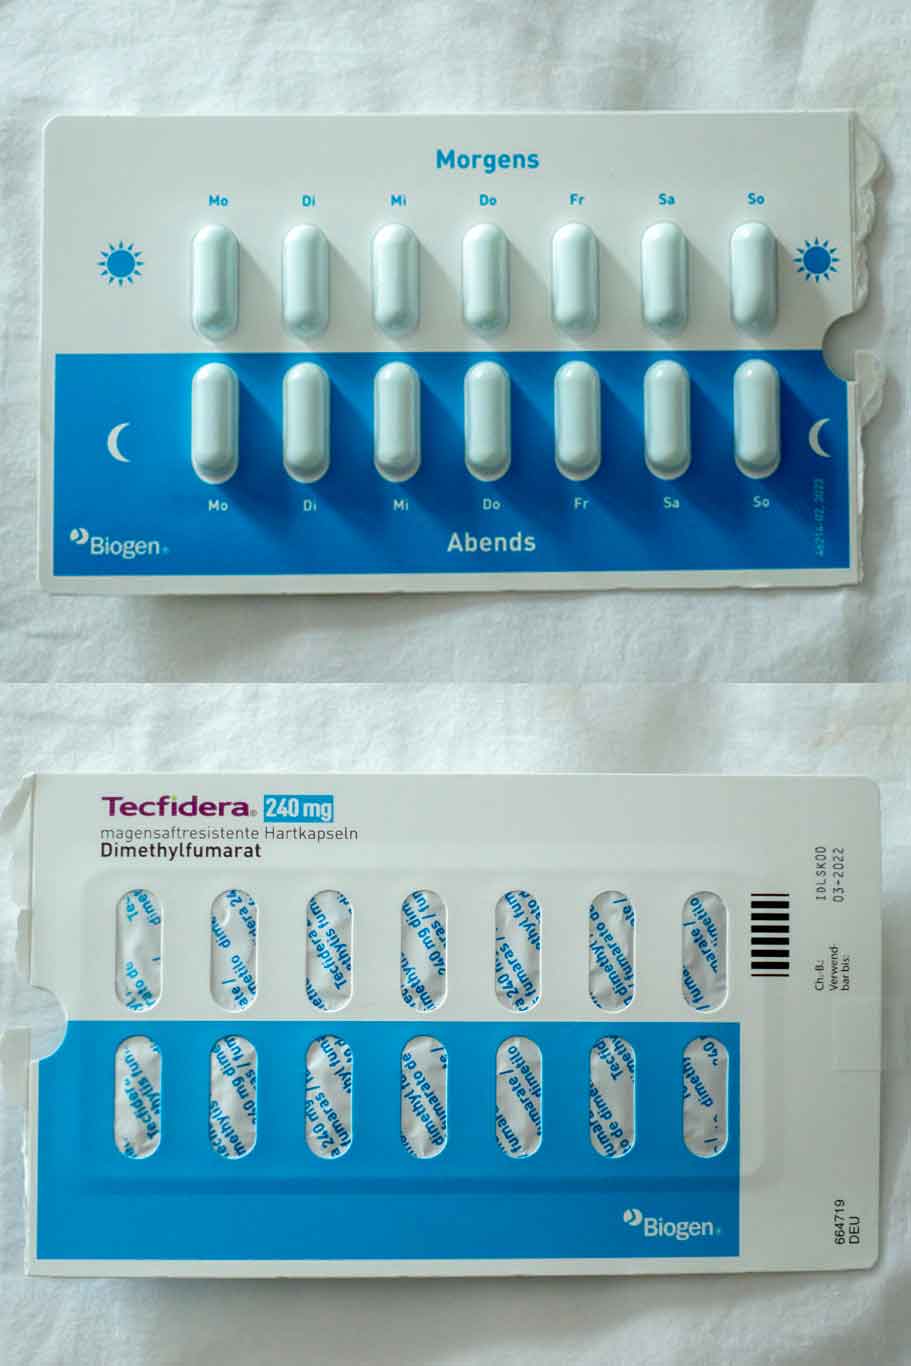 Man sieht 14 Tecfidera Pillen die in ihrer Originalverpackung sind